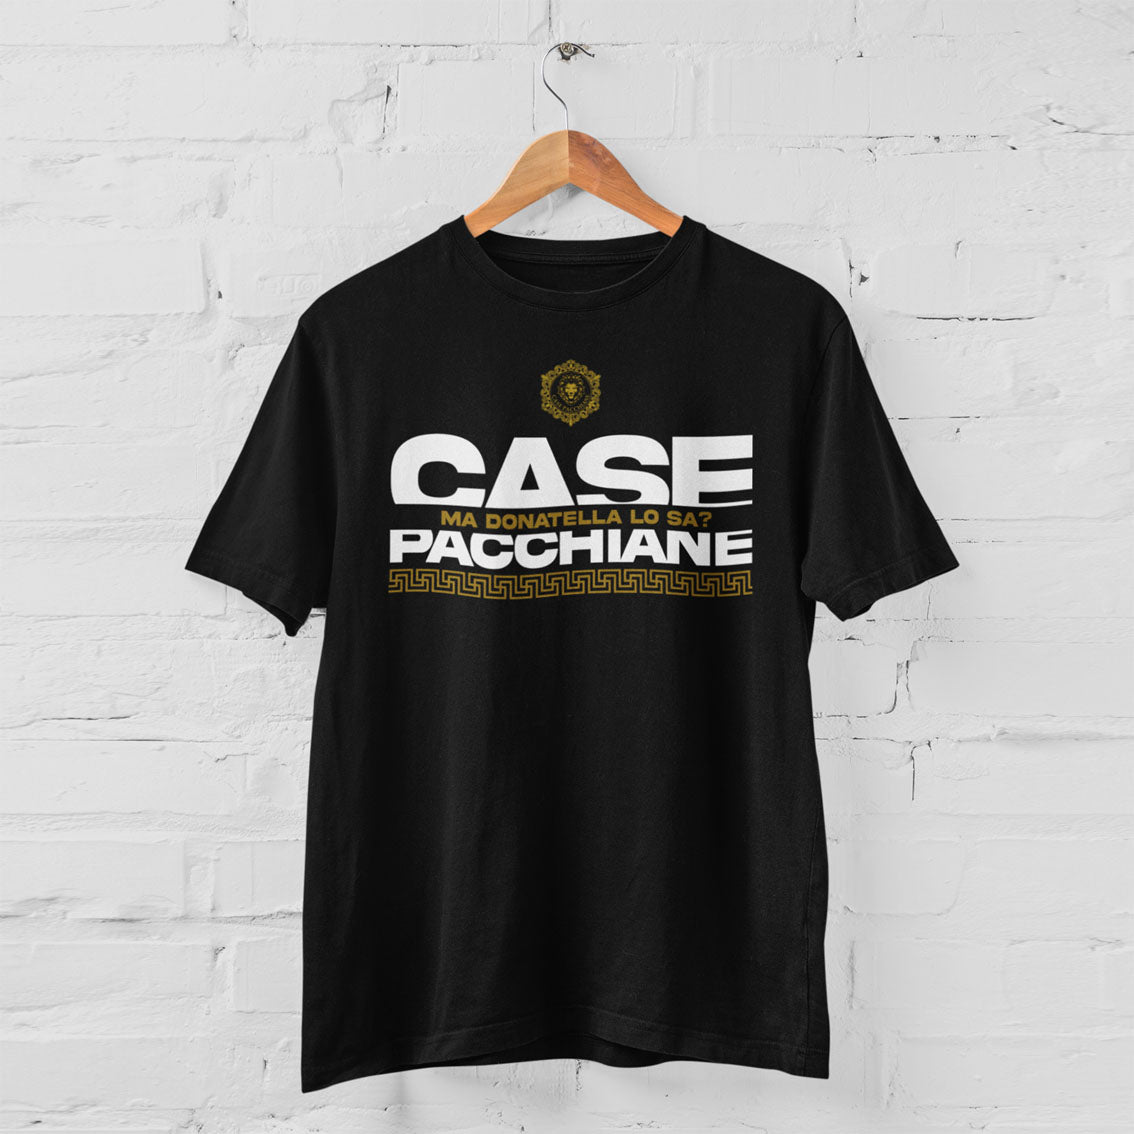 Official T-shirt Case Pacchiane "Donatella"